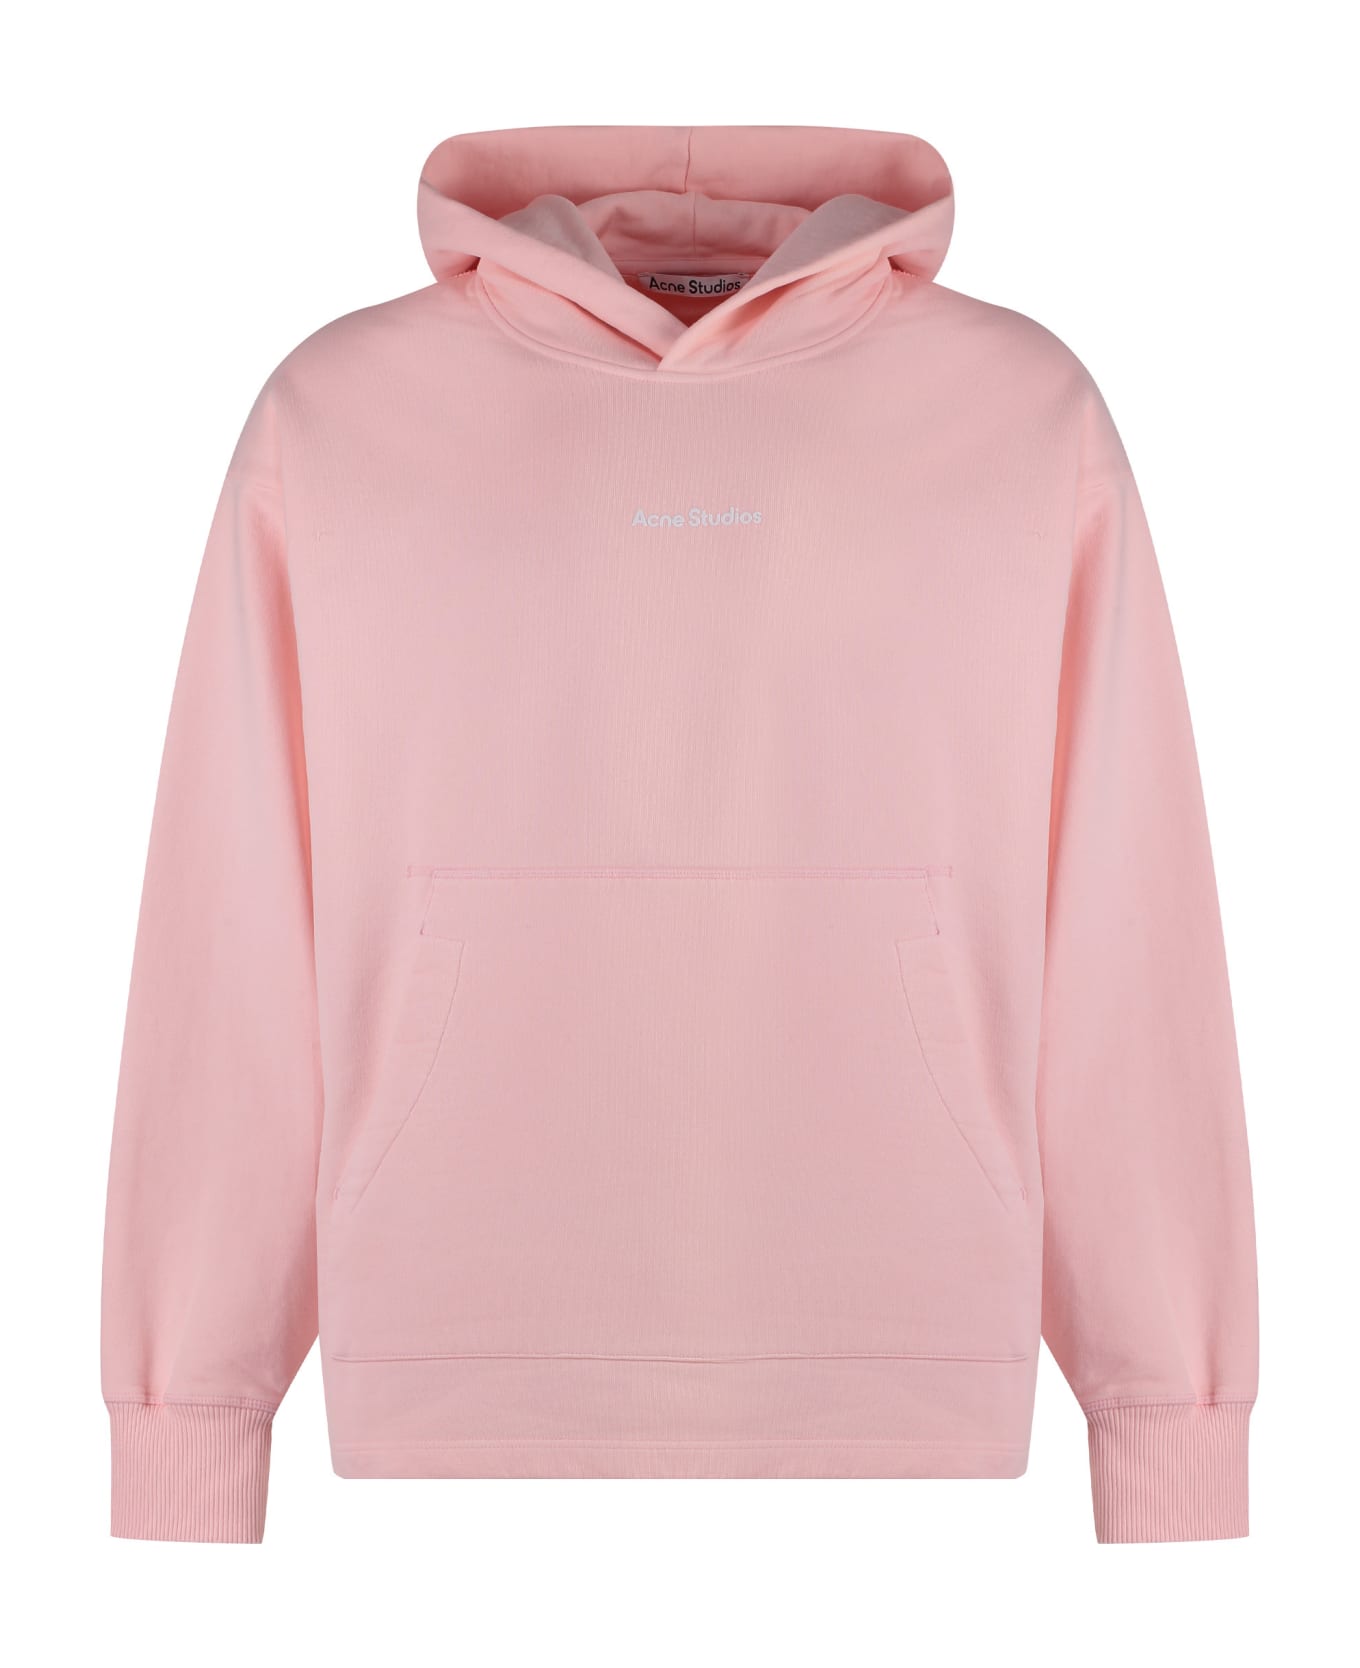 Acne Studios Hooded Sweatshirt - Pink